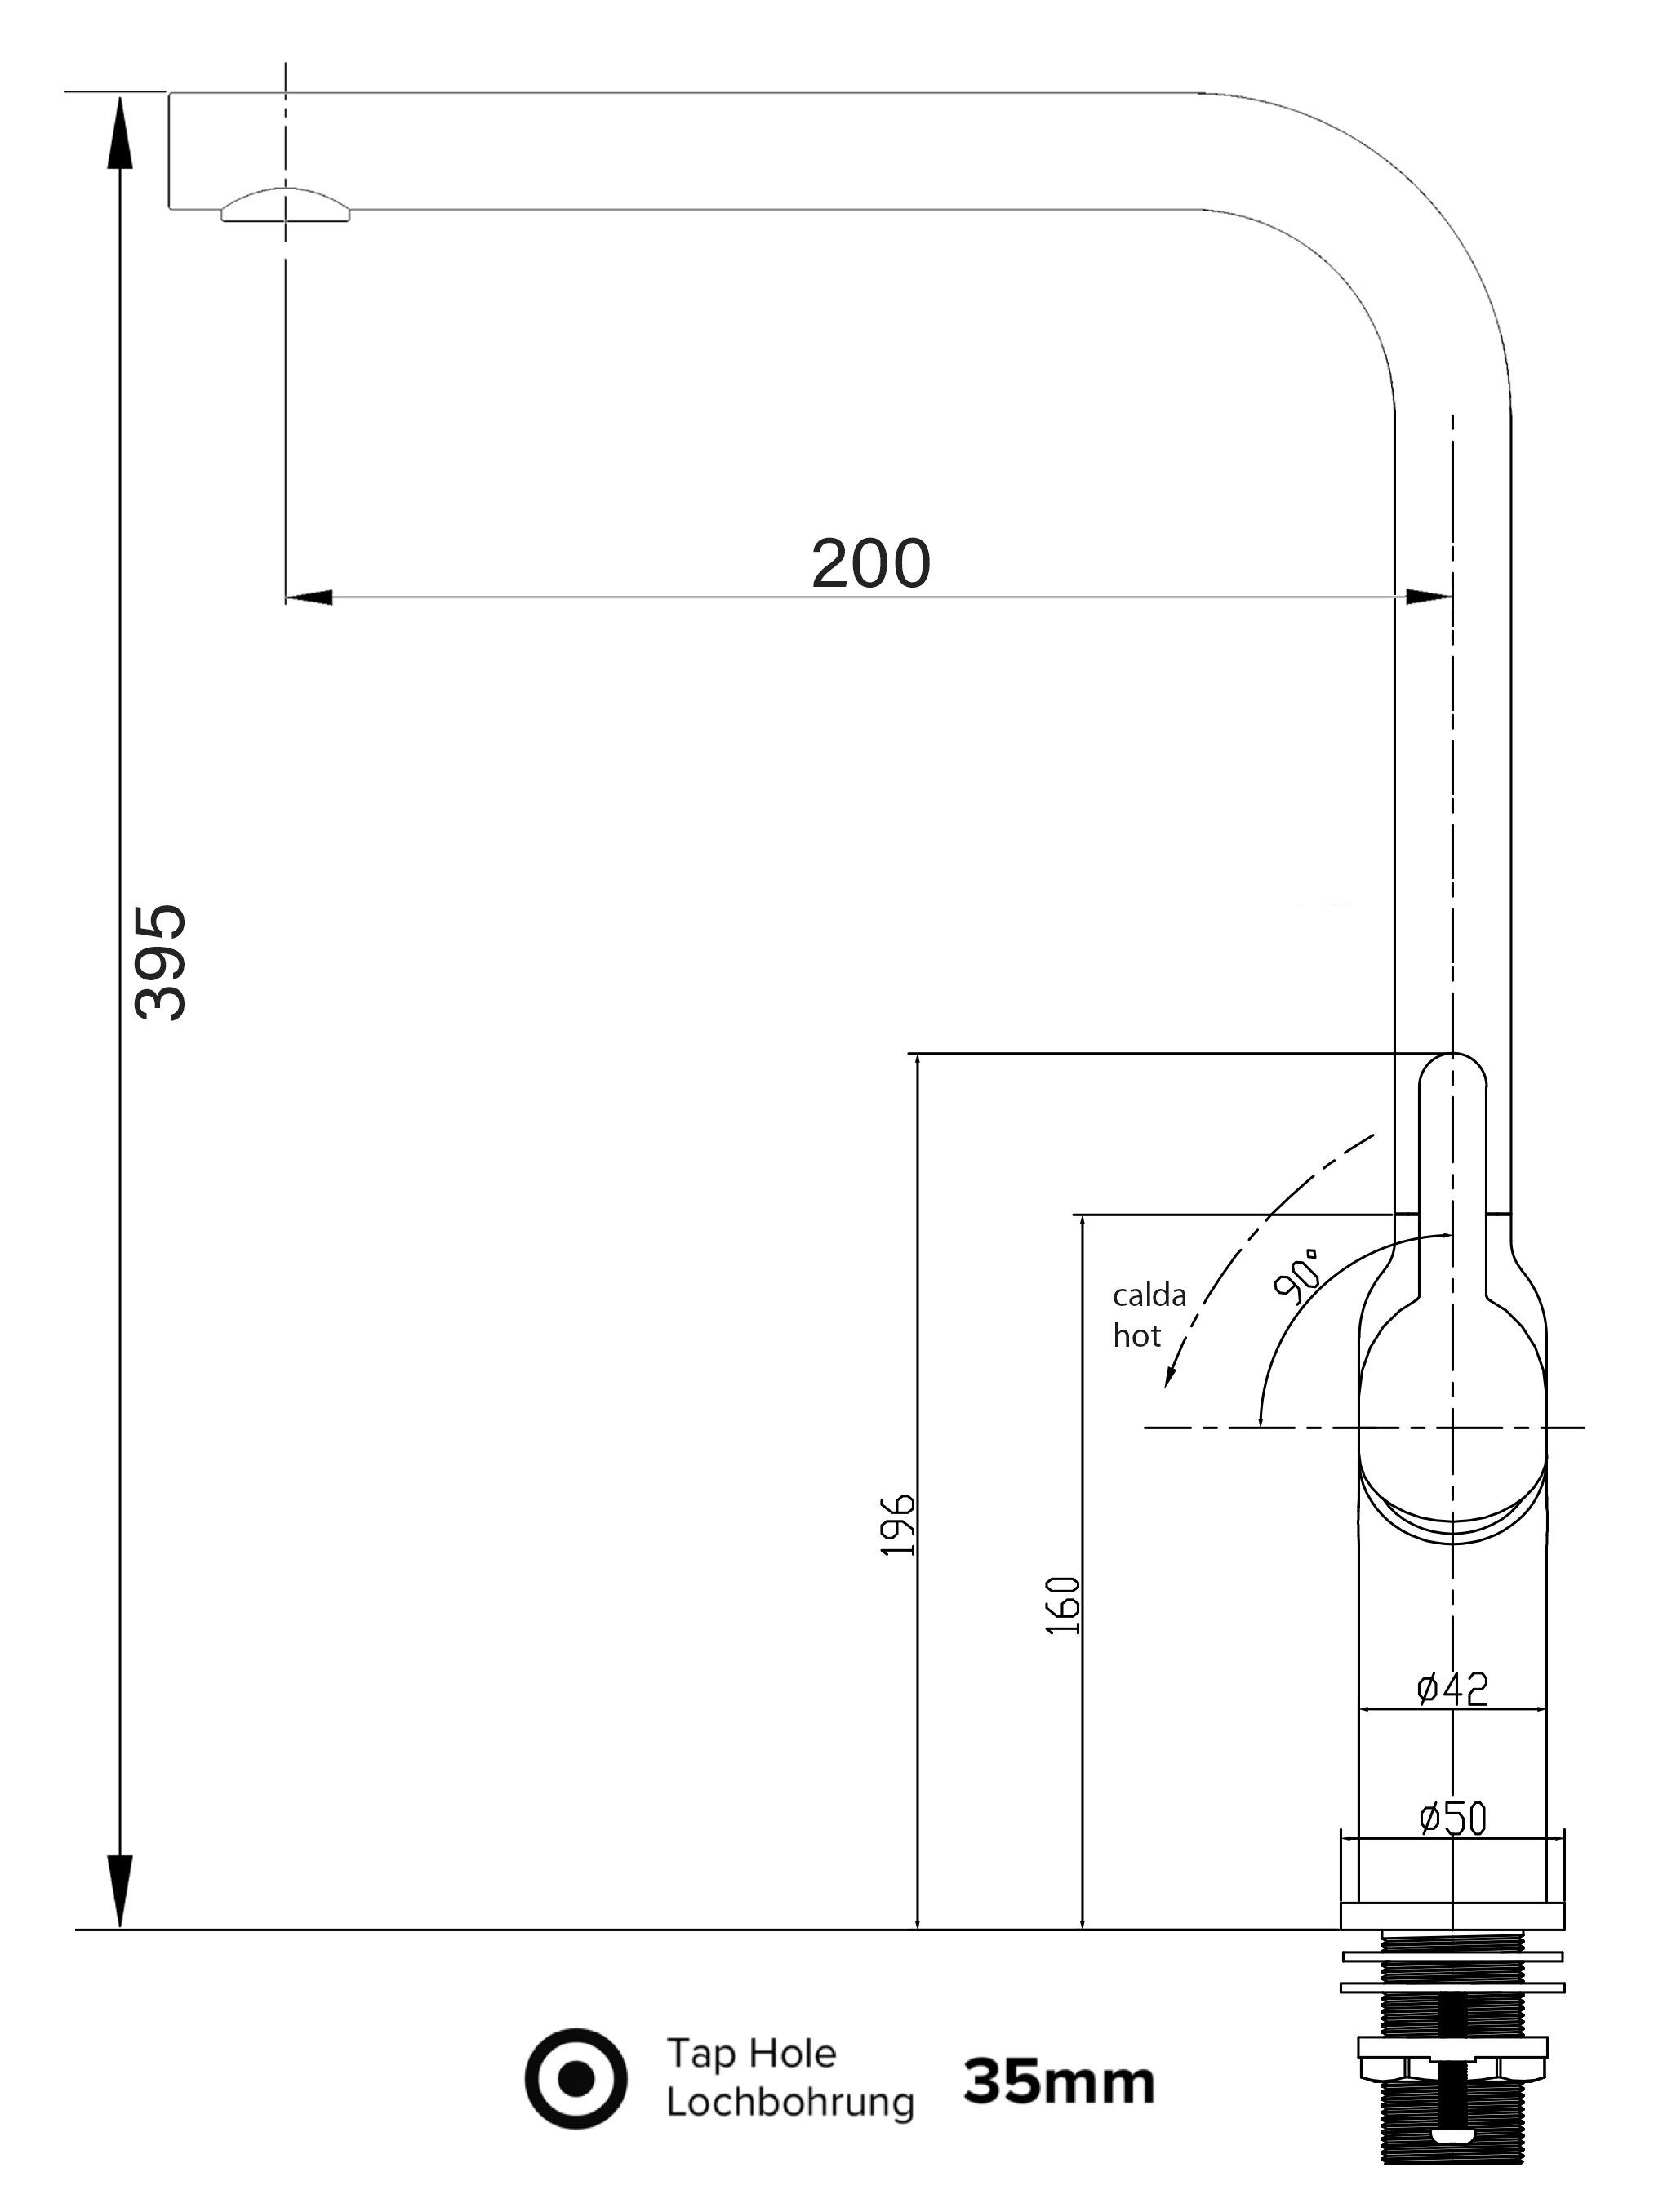 Hochwertige VIZIO mit Wasserhahn Design Auslauf Küchenarmatur schwenkbarem Küchenarmatur chrom Verchromung 360° Hochdruck,